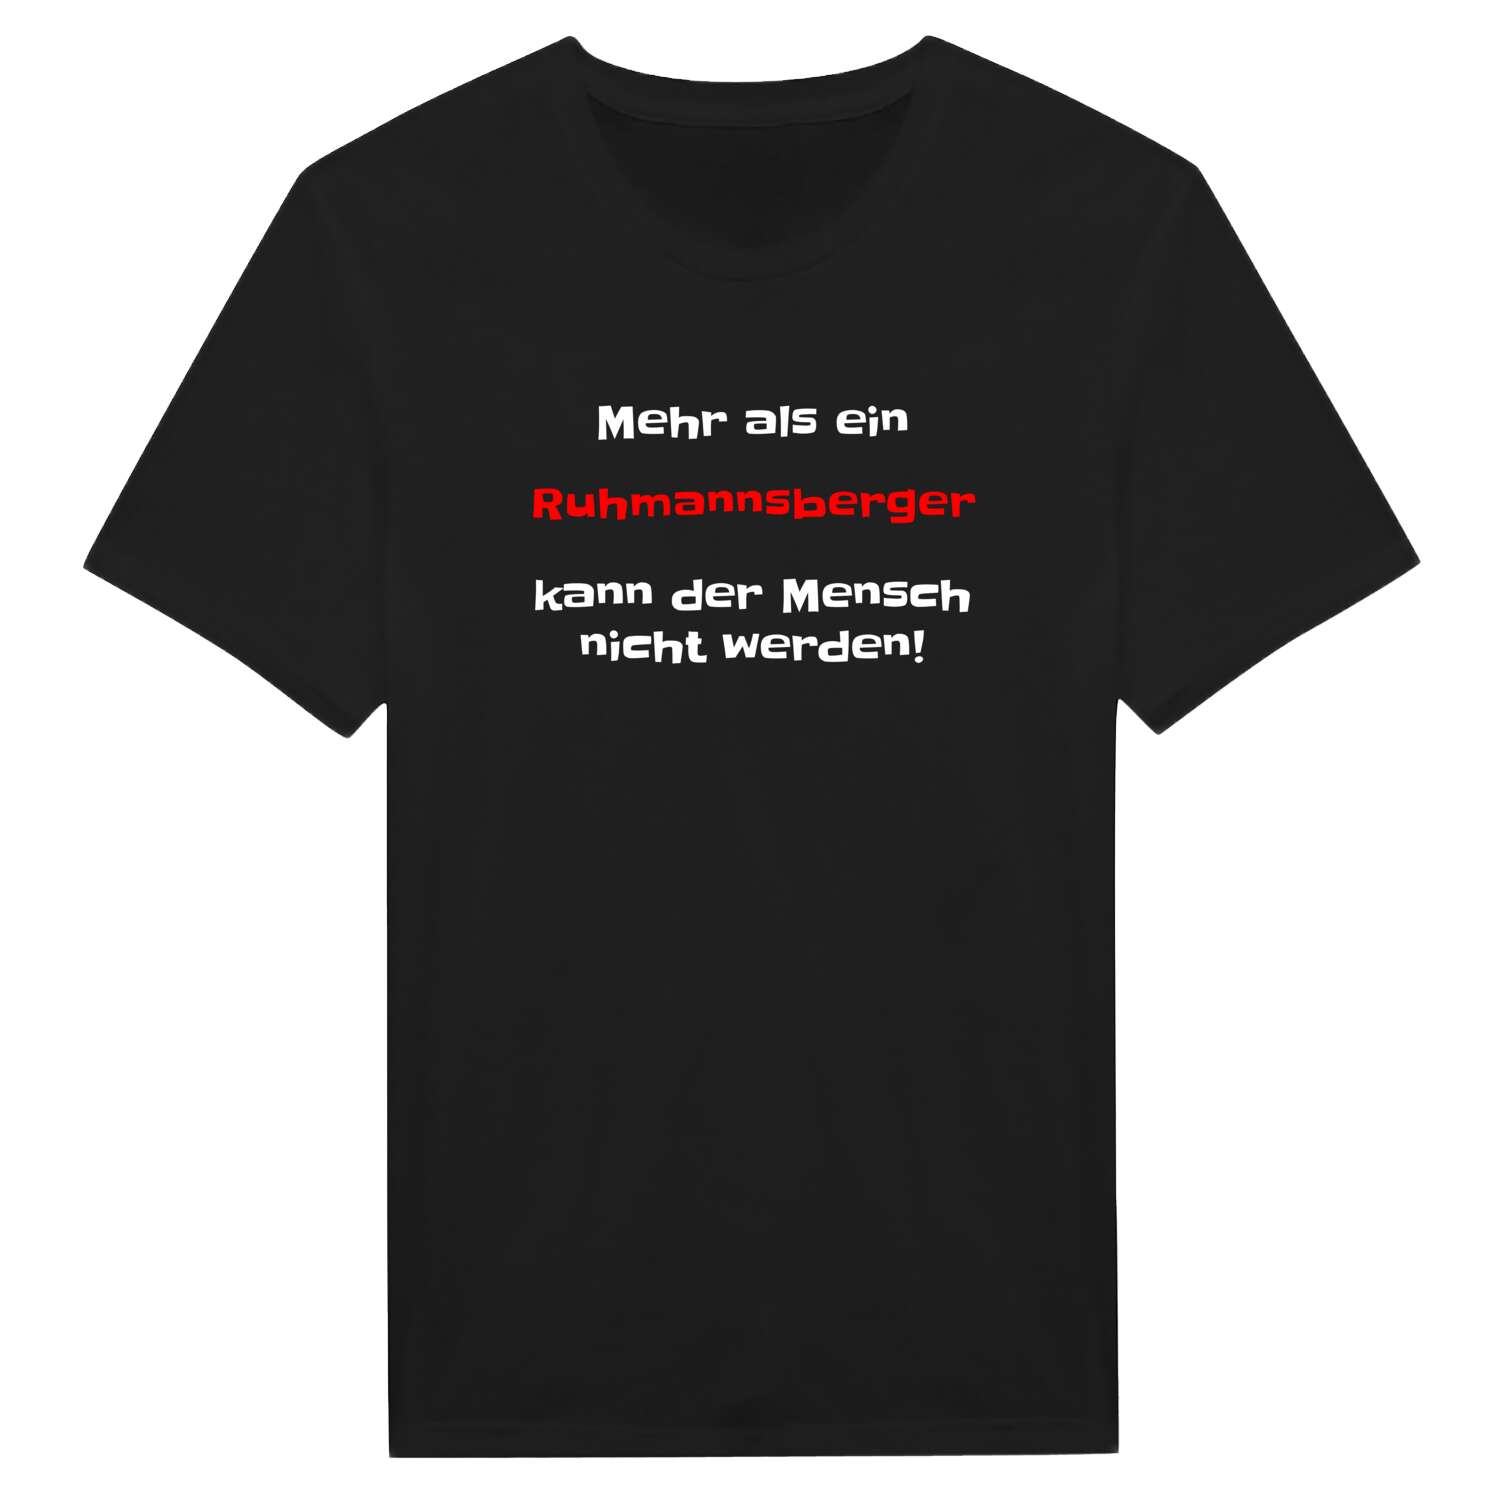 Ruhmannsberg T-Shirt »Mehr als ein«